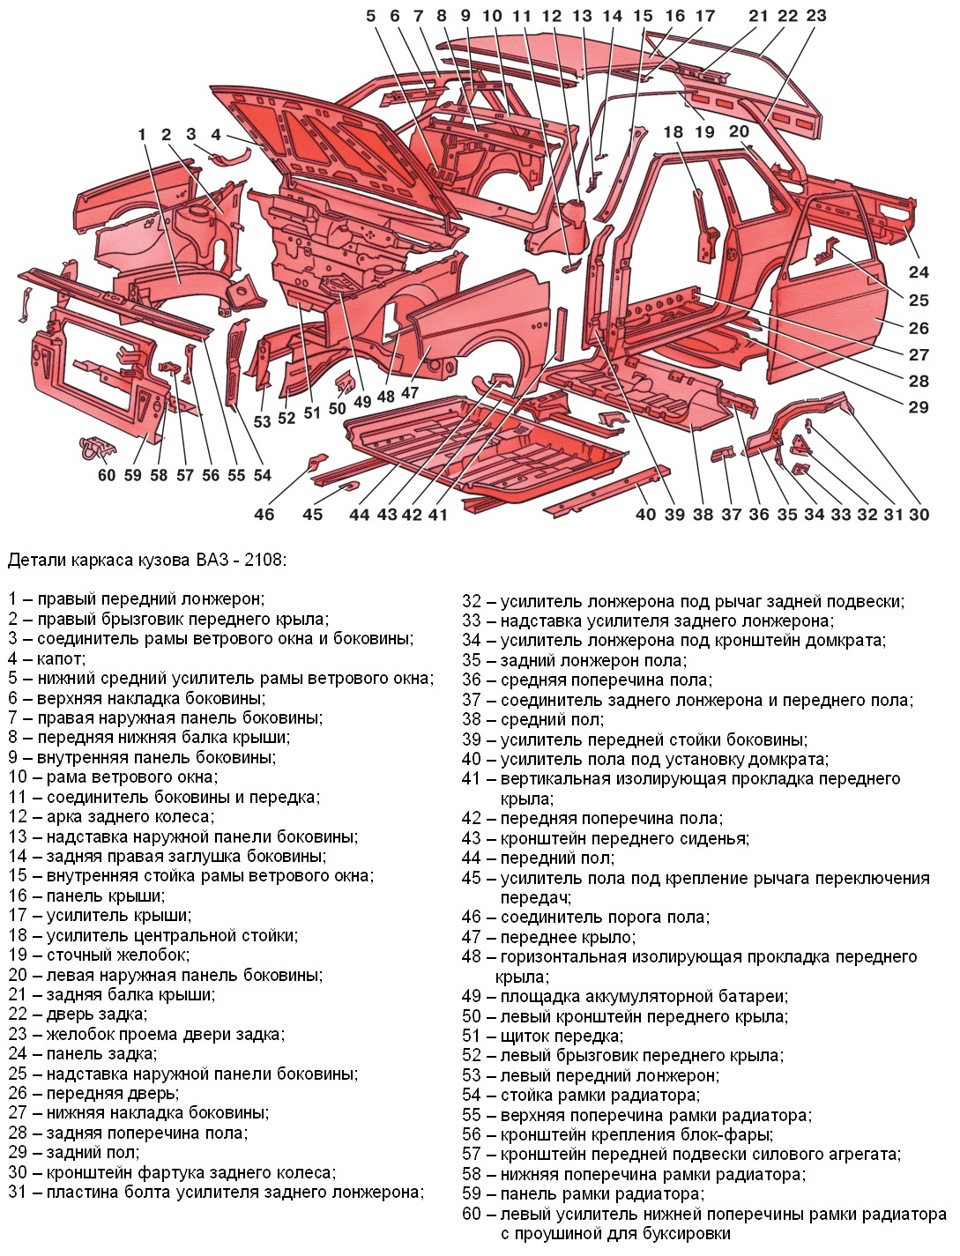 Список частей автомобиля